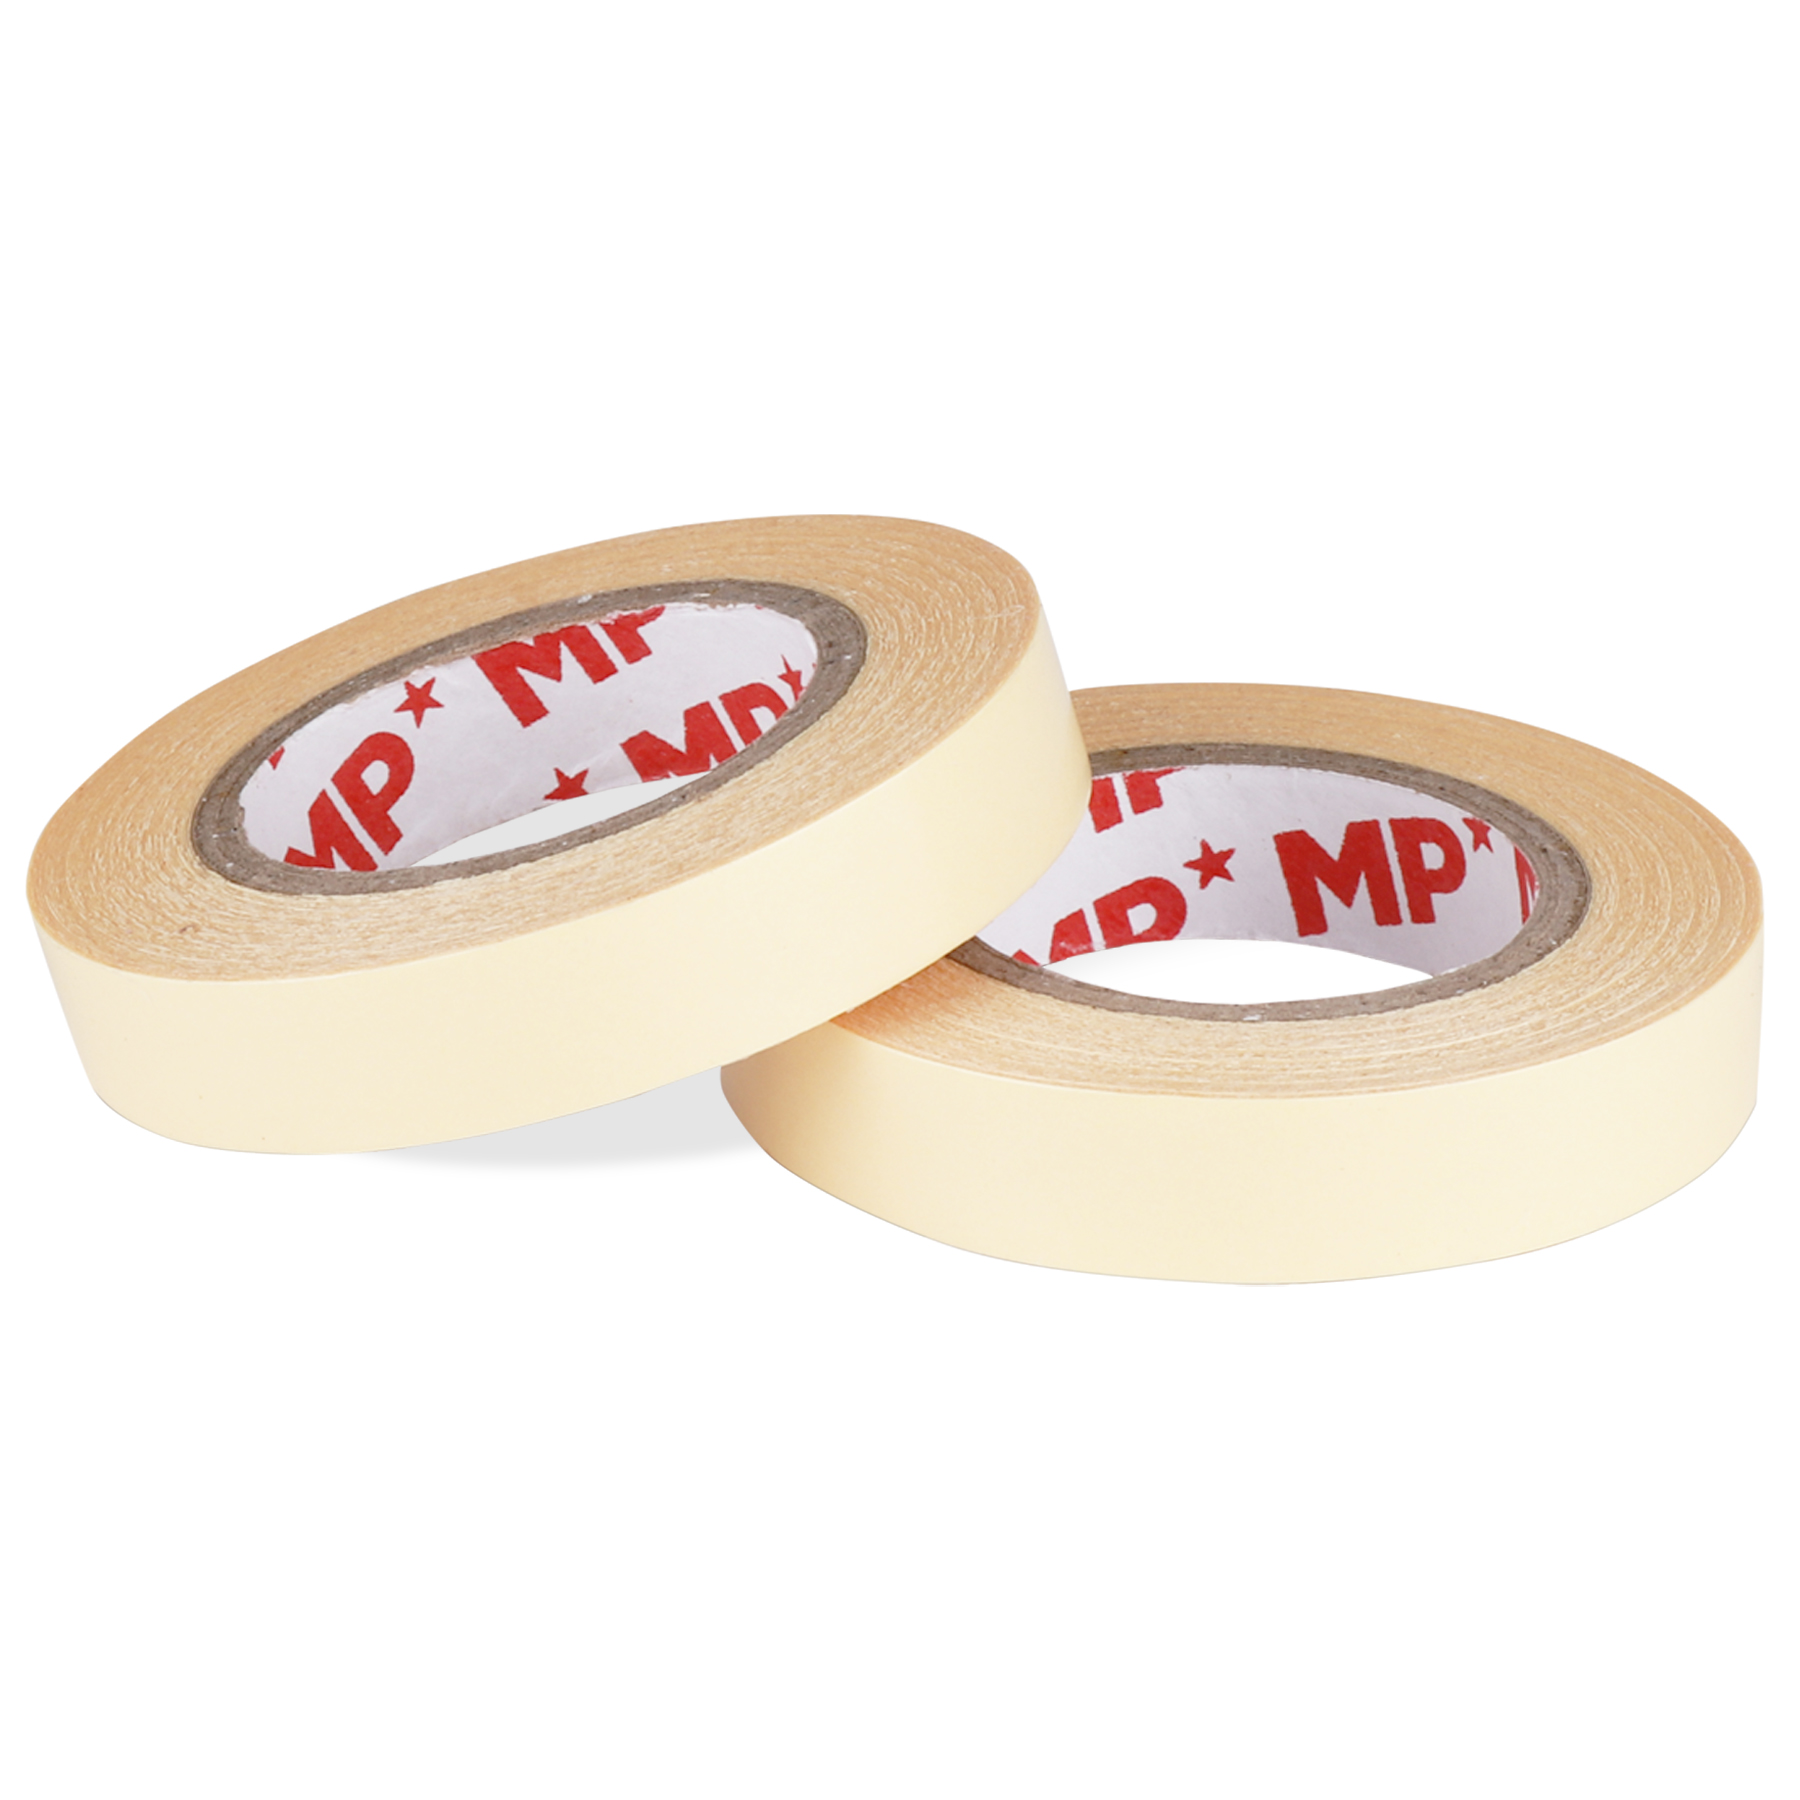 PA512-01 Tape fanosotra adhesive misy lafiny roa, 12mm×10m